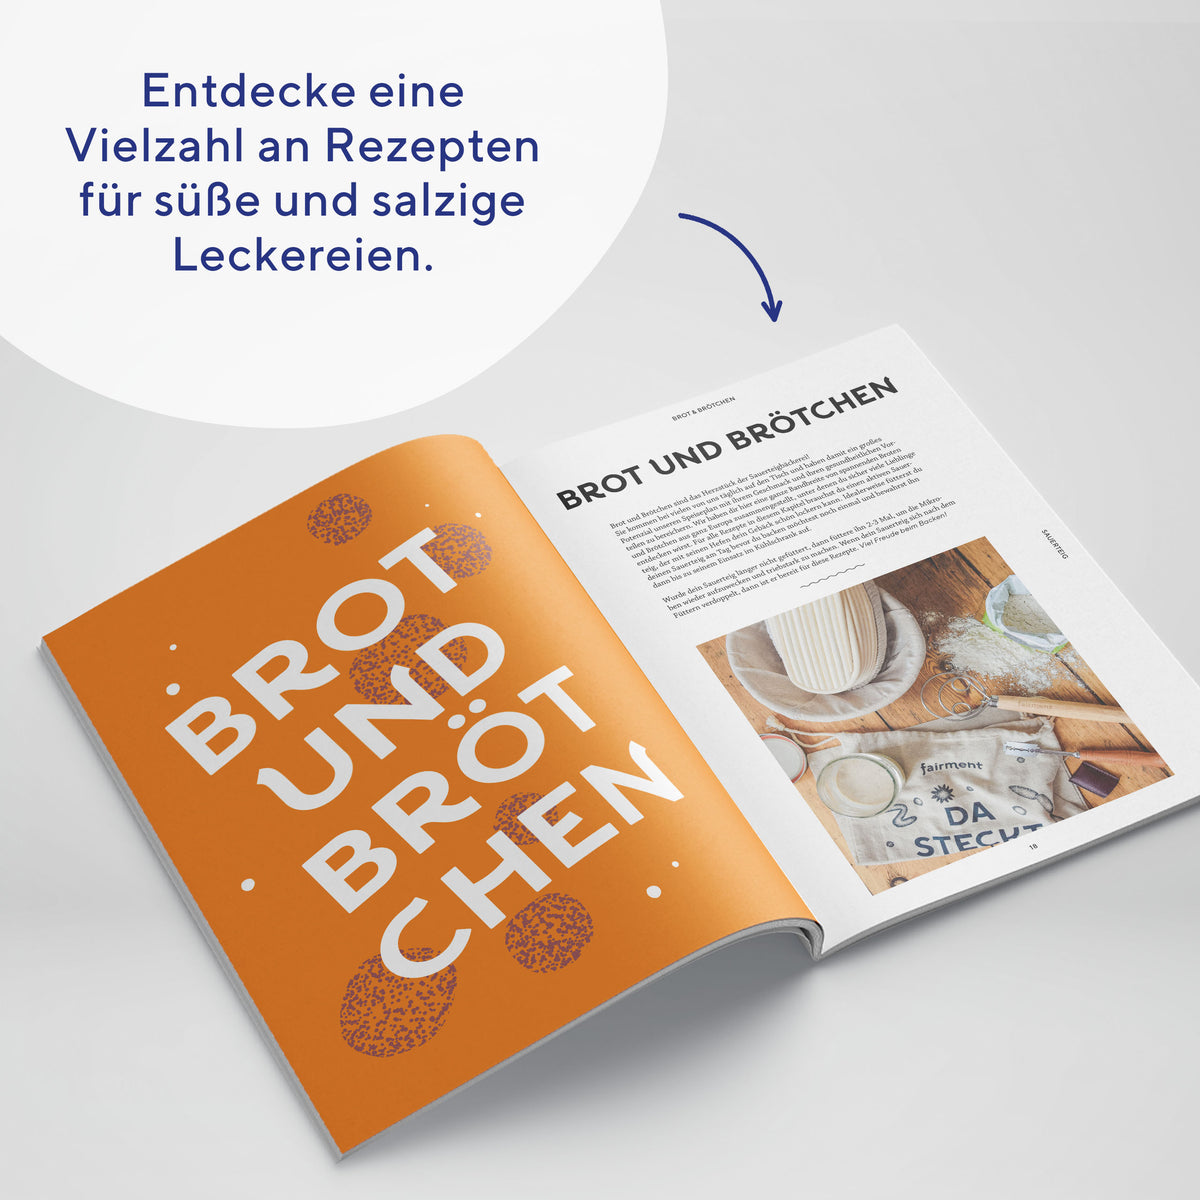 sauerteig-rezeptbuch-fermentation-e-book-digital